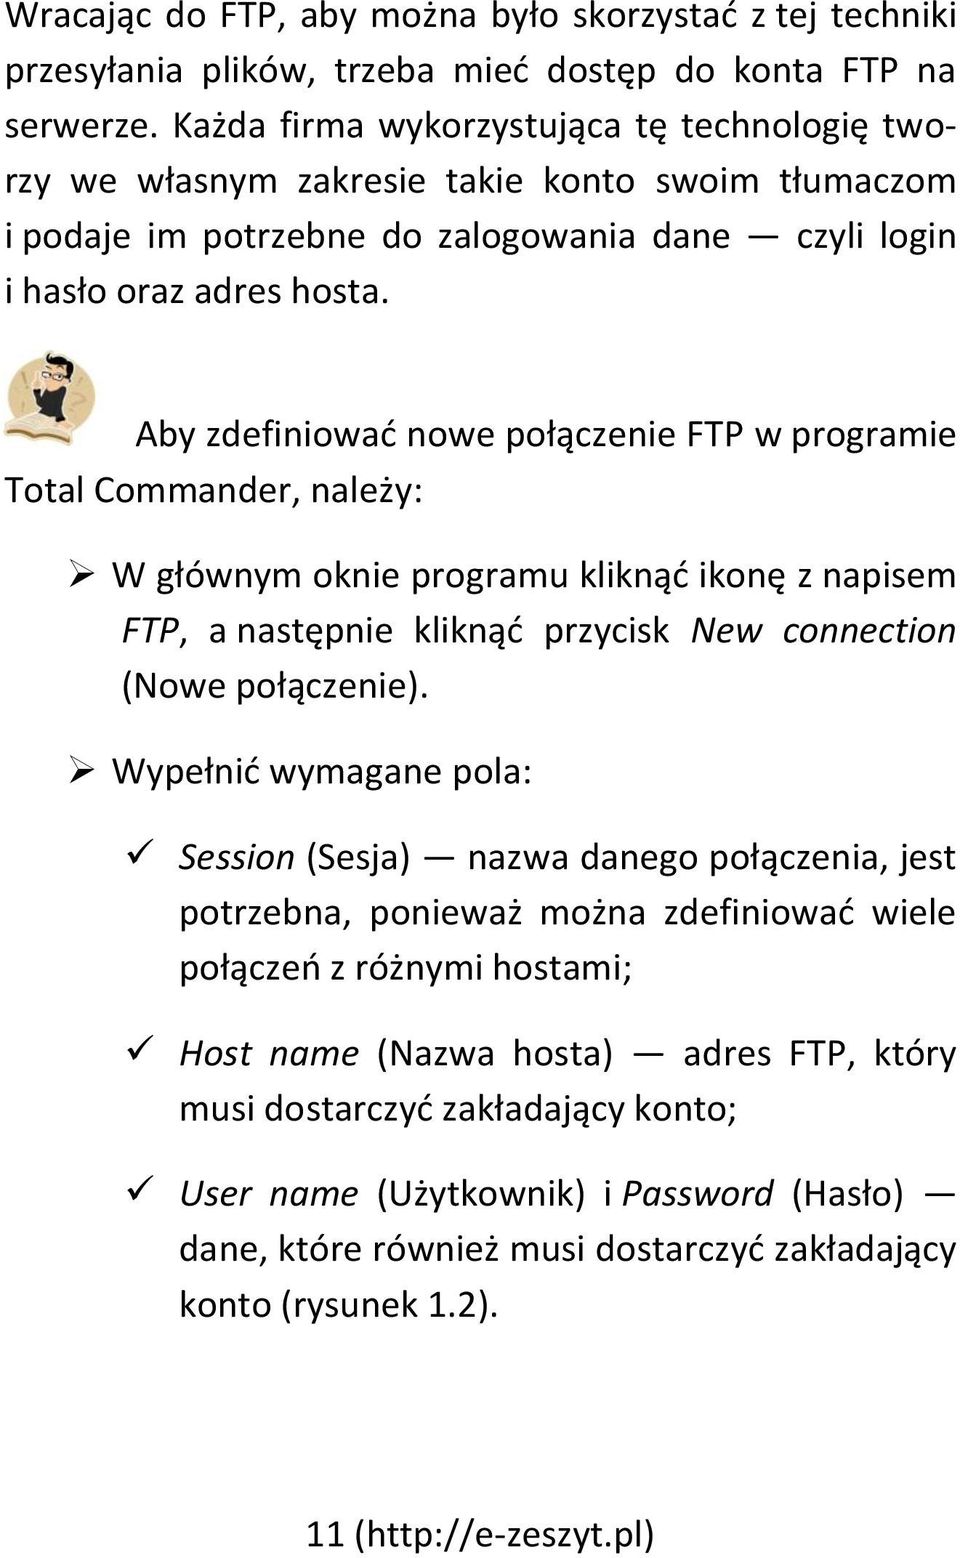 Aby zdefiniować nowe połączenie FTP w programie Total Commander, należy: W głównym oknie programu kliknąć ikonę z napisem FTP, a następnie kliknąć przycisk New connection (Nowe połączenie).